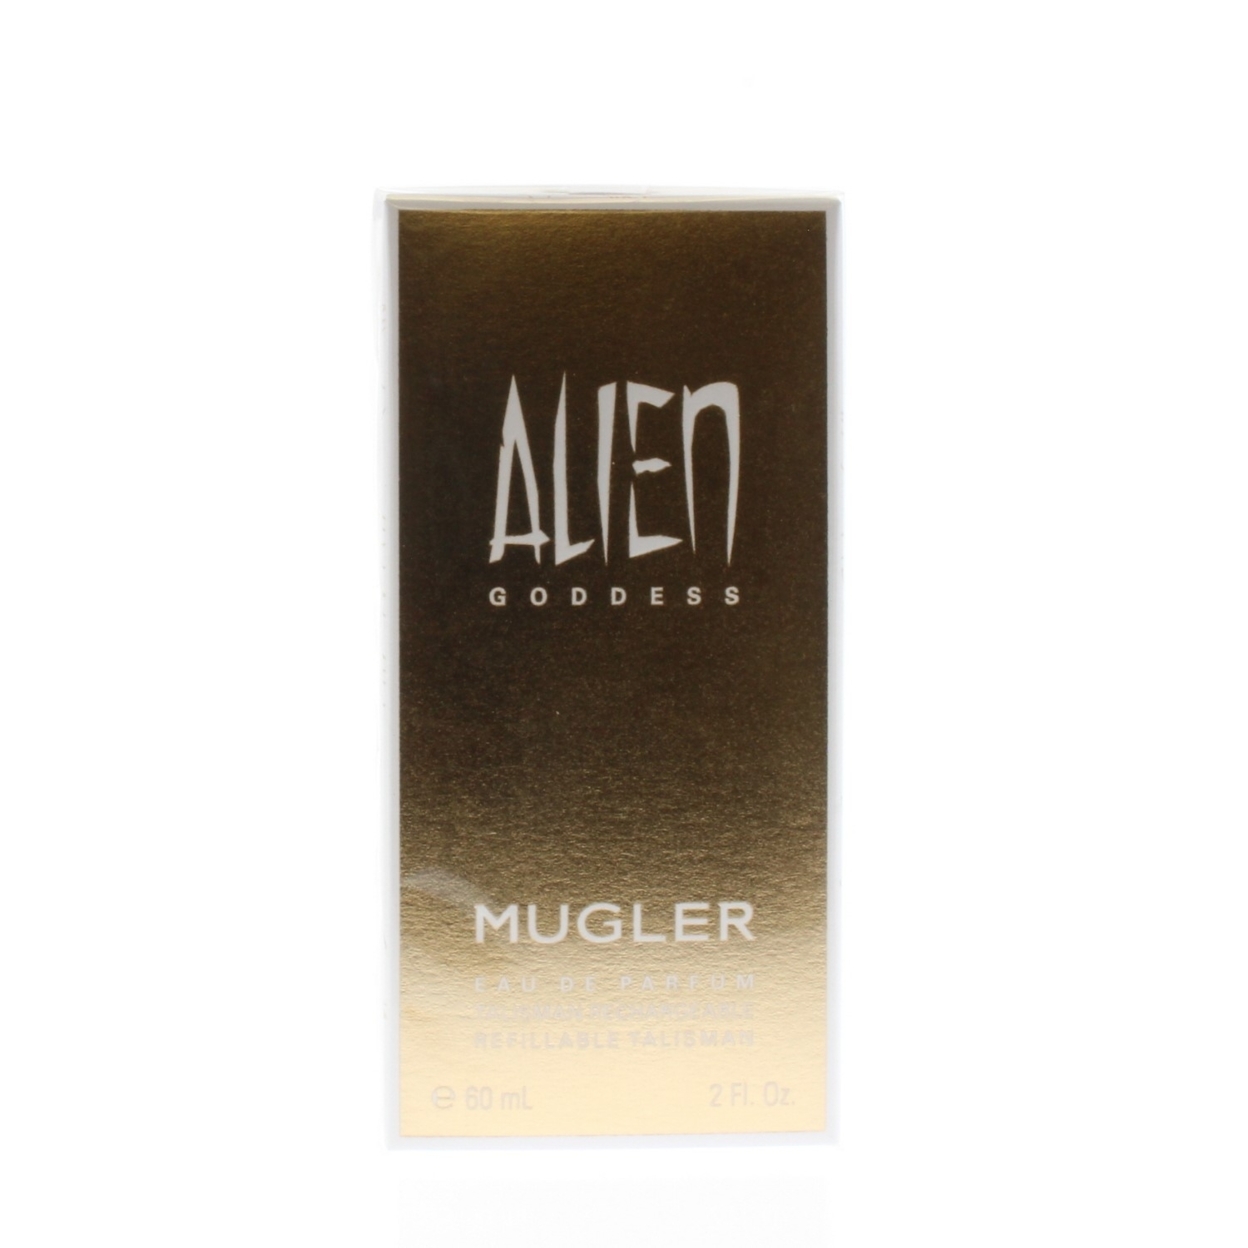 Thierry Mugler Alien Goddess Mugler Edp Spray For Women 60ml/2oz